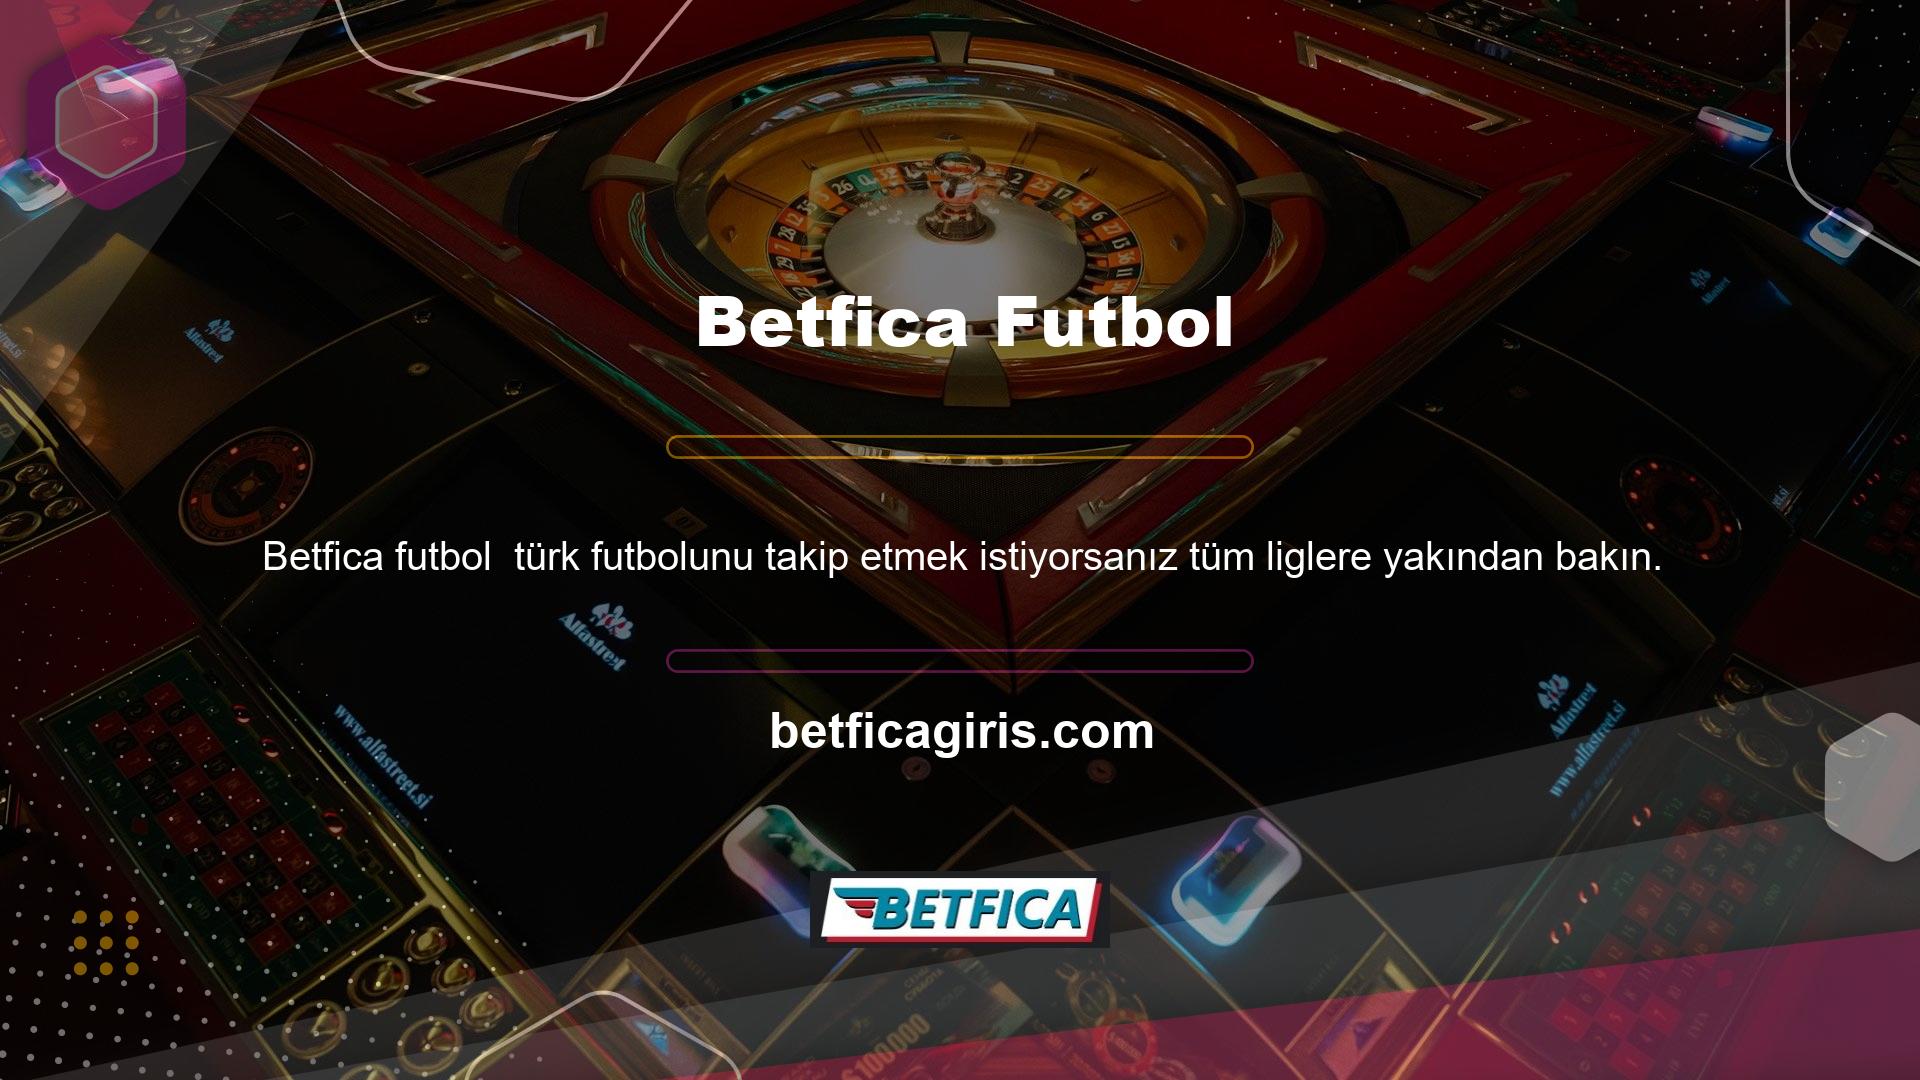 Betfica, dünya çapındaki sporseverlere Türk futbol haberleri ve maç izleme hizmetleri sunmaktadır